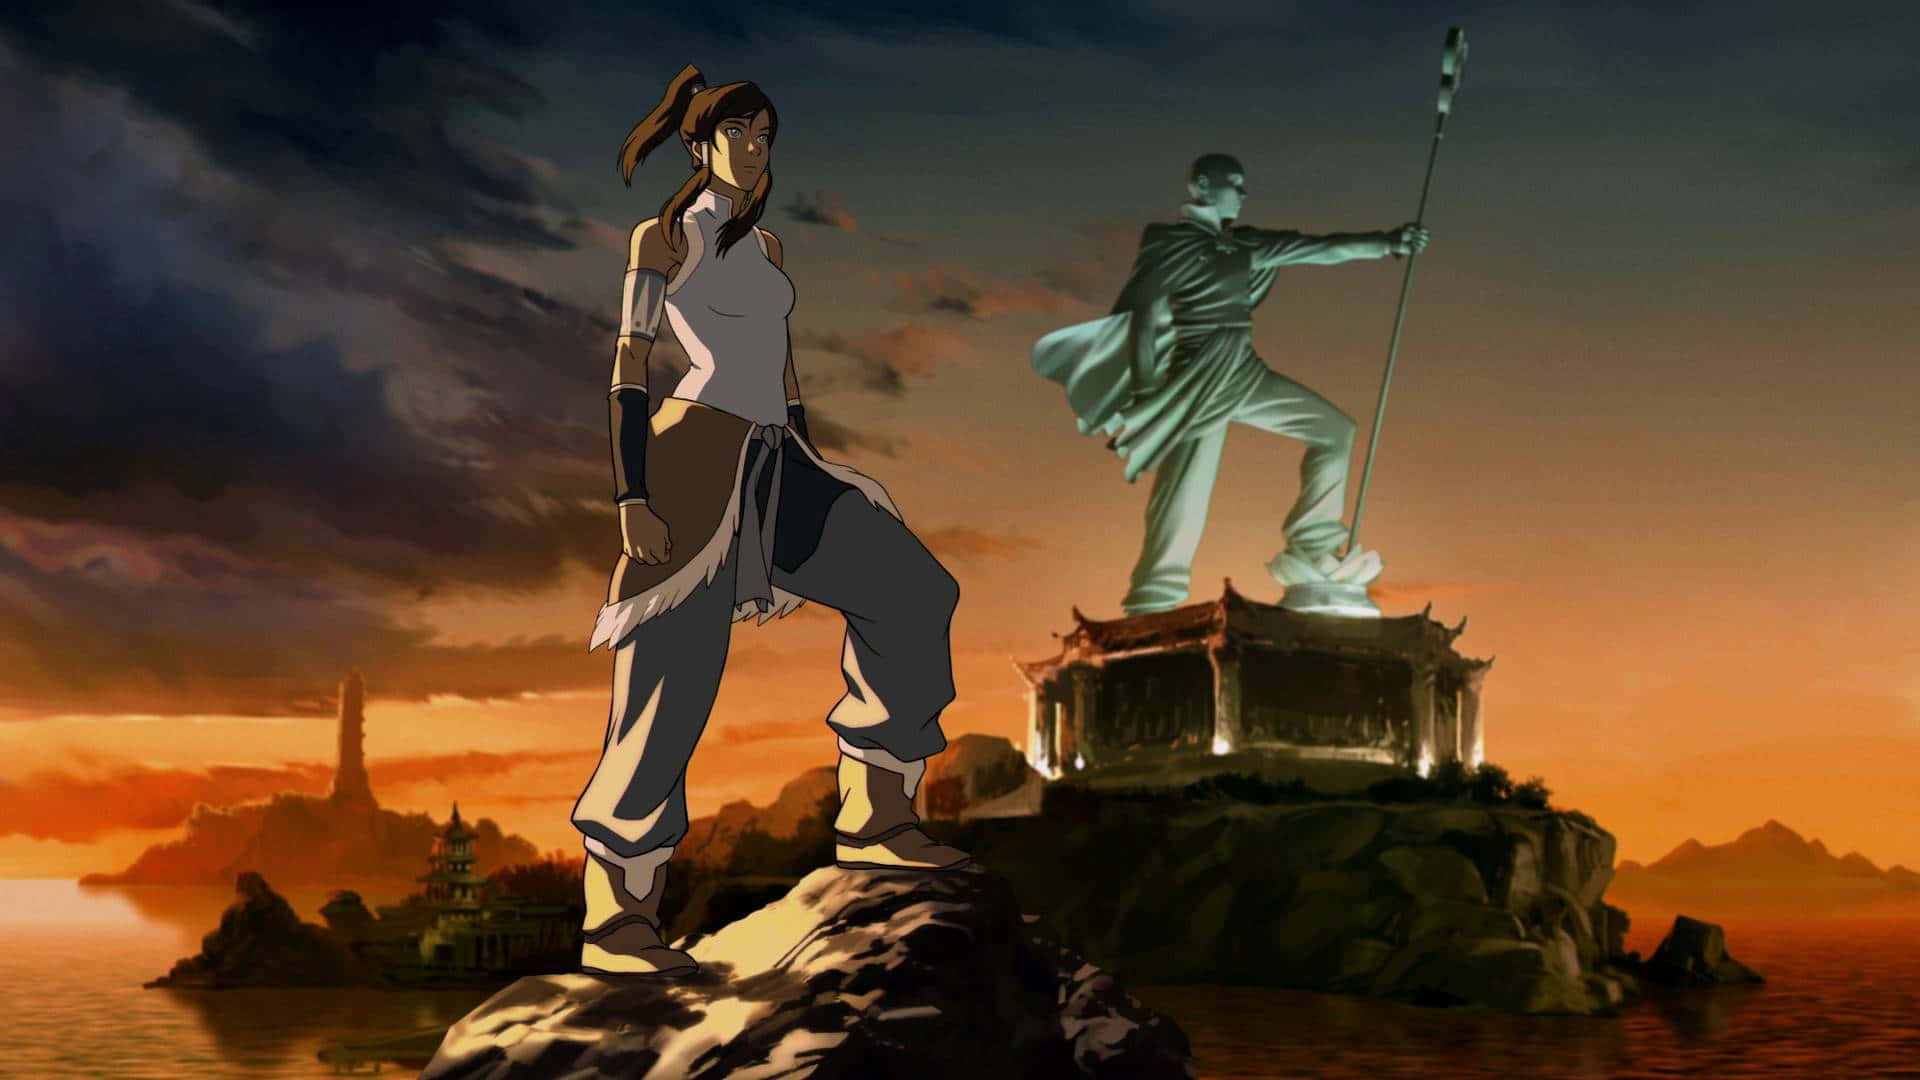 Korra, den modige Avatar fra Avatar-verdenen. Wallpaper